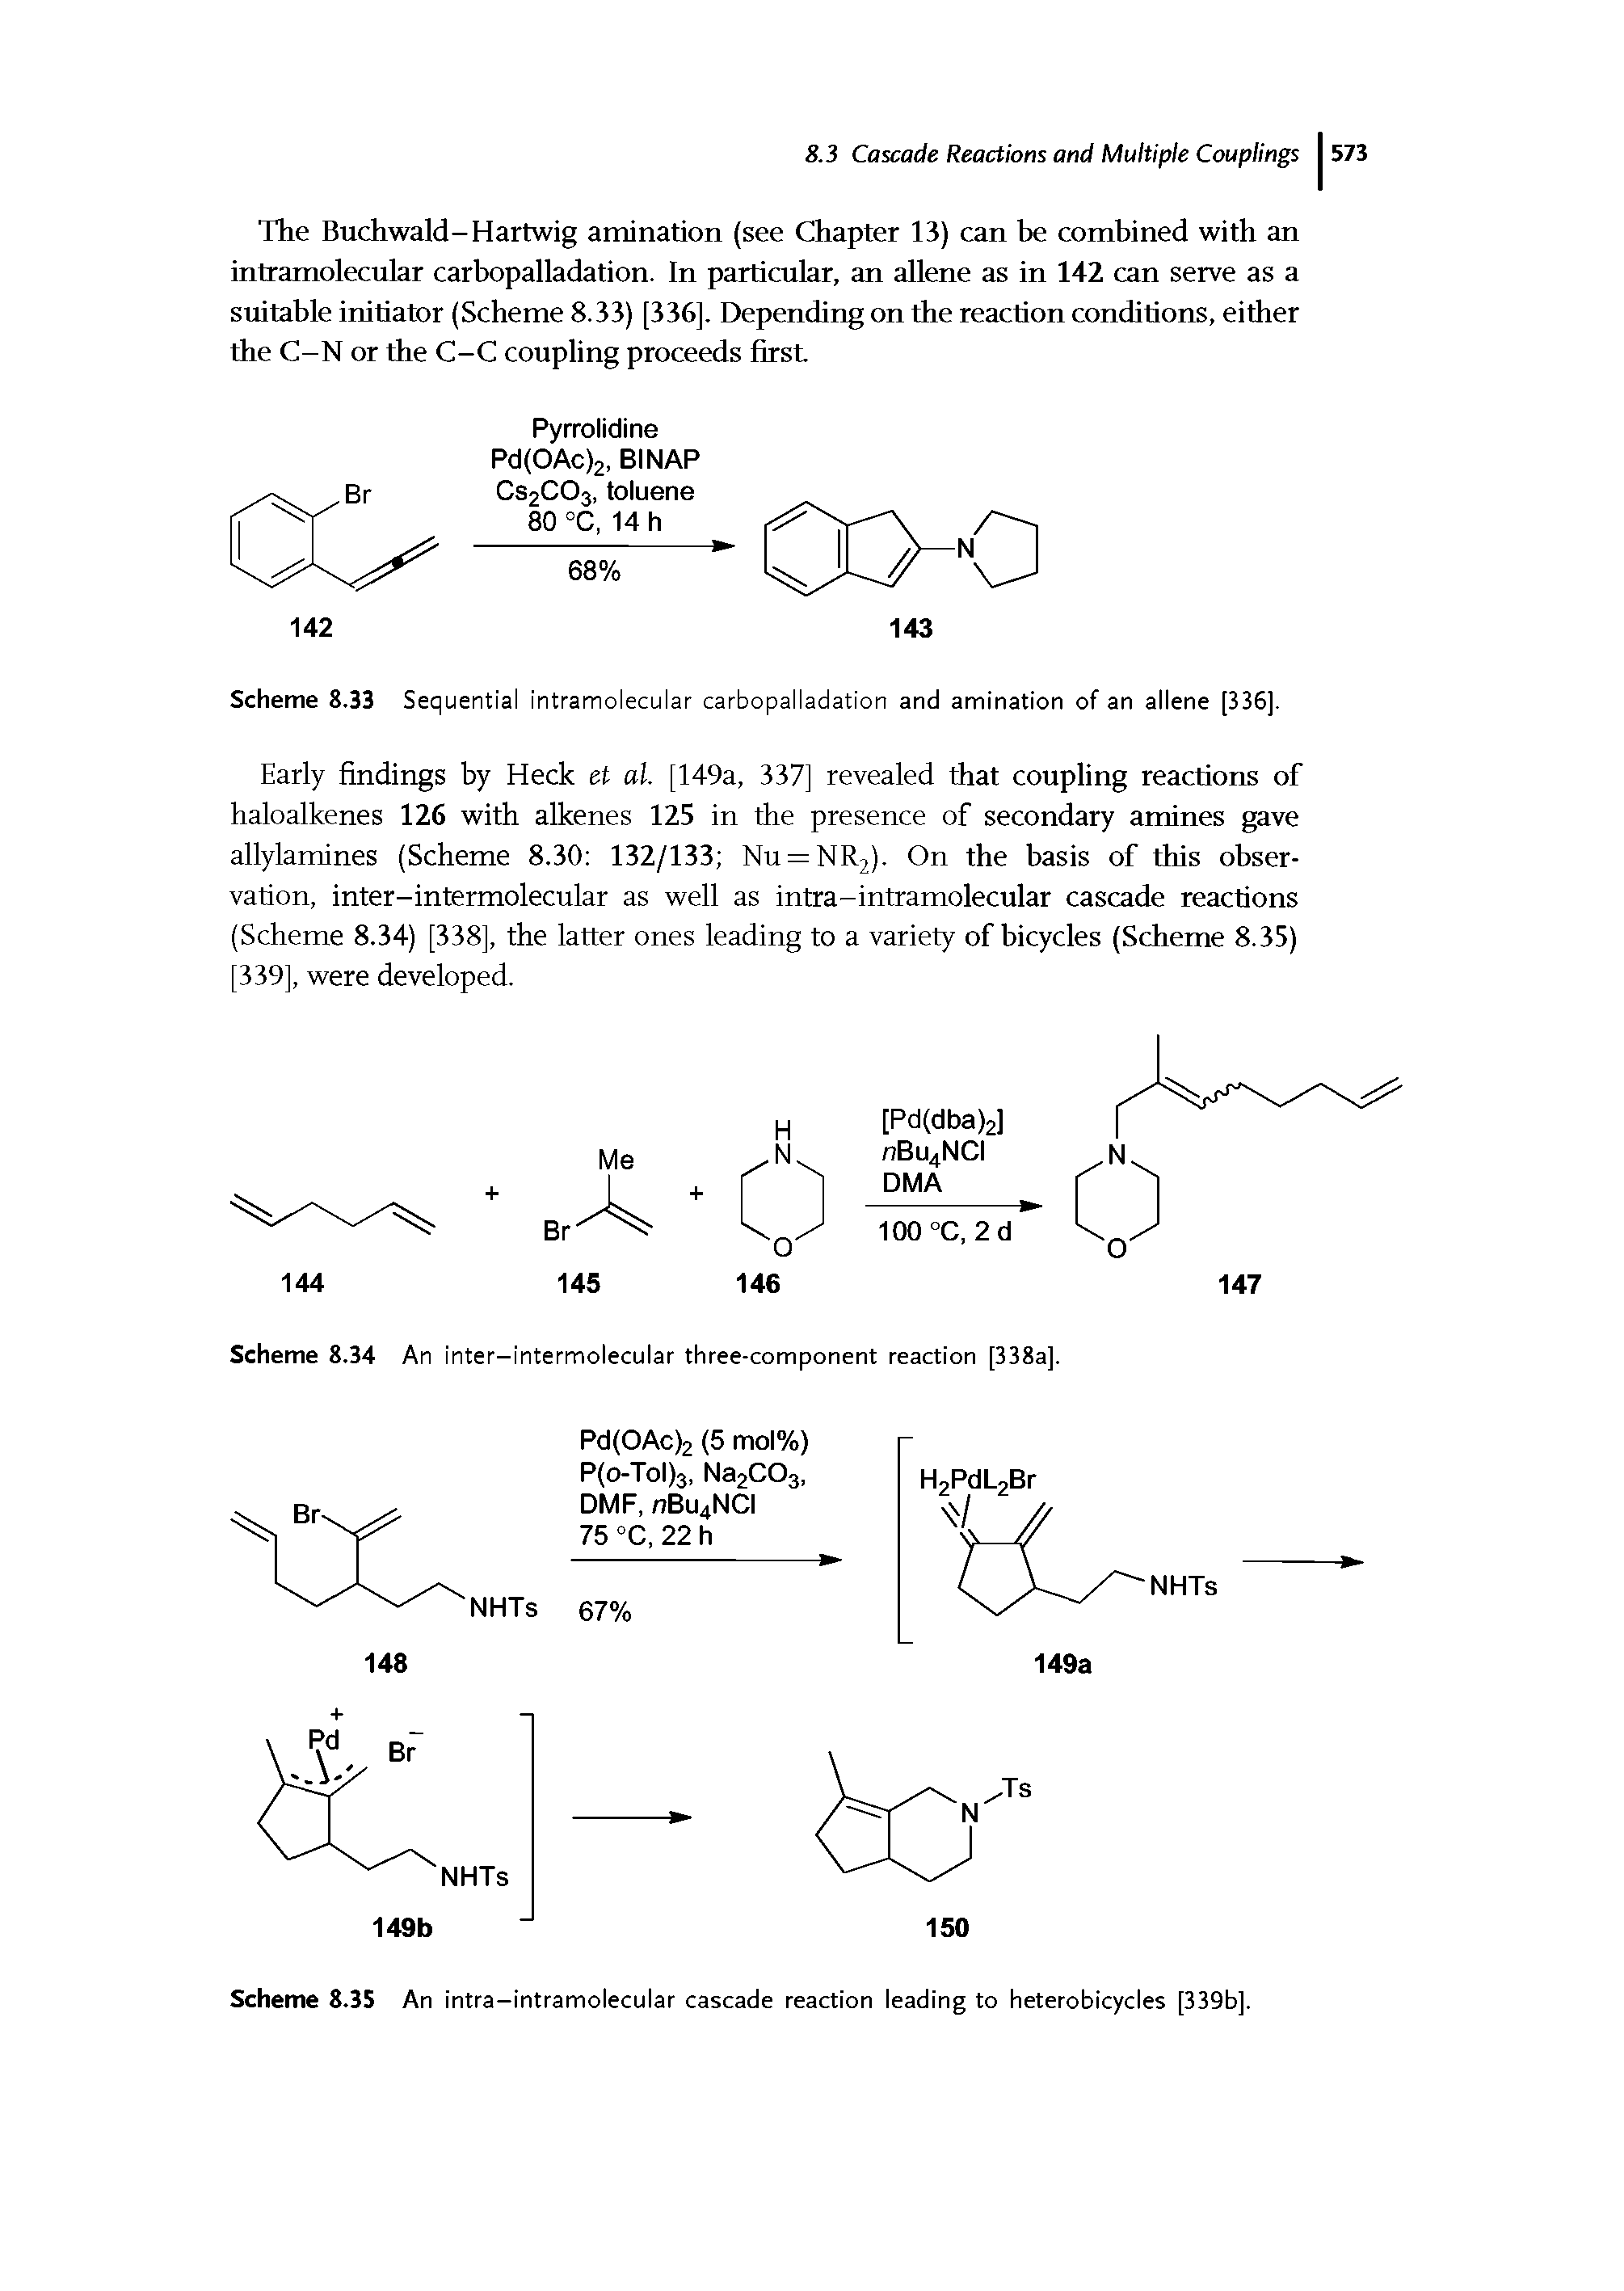 Scheme 8.34 An inter-intermolecular three-component reaction [338aj.